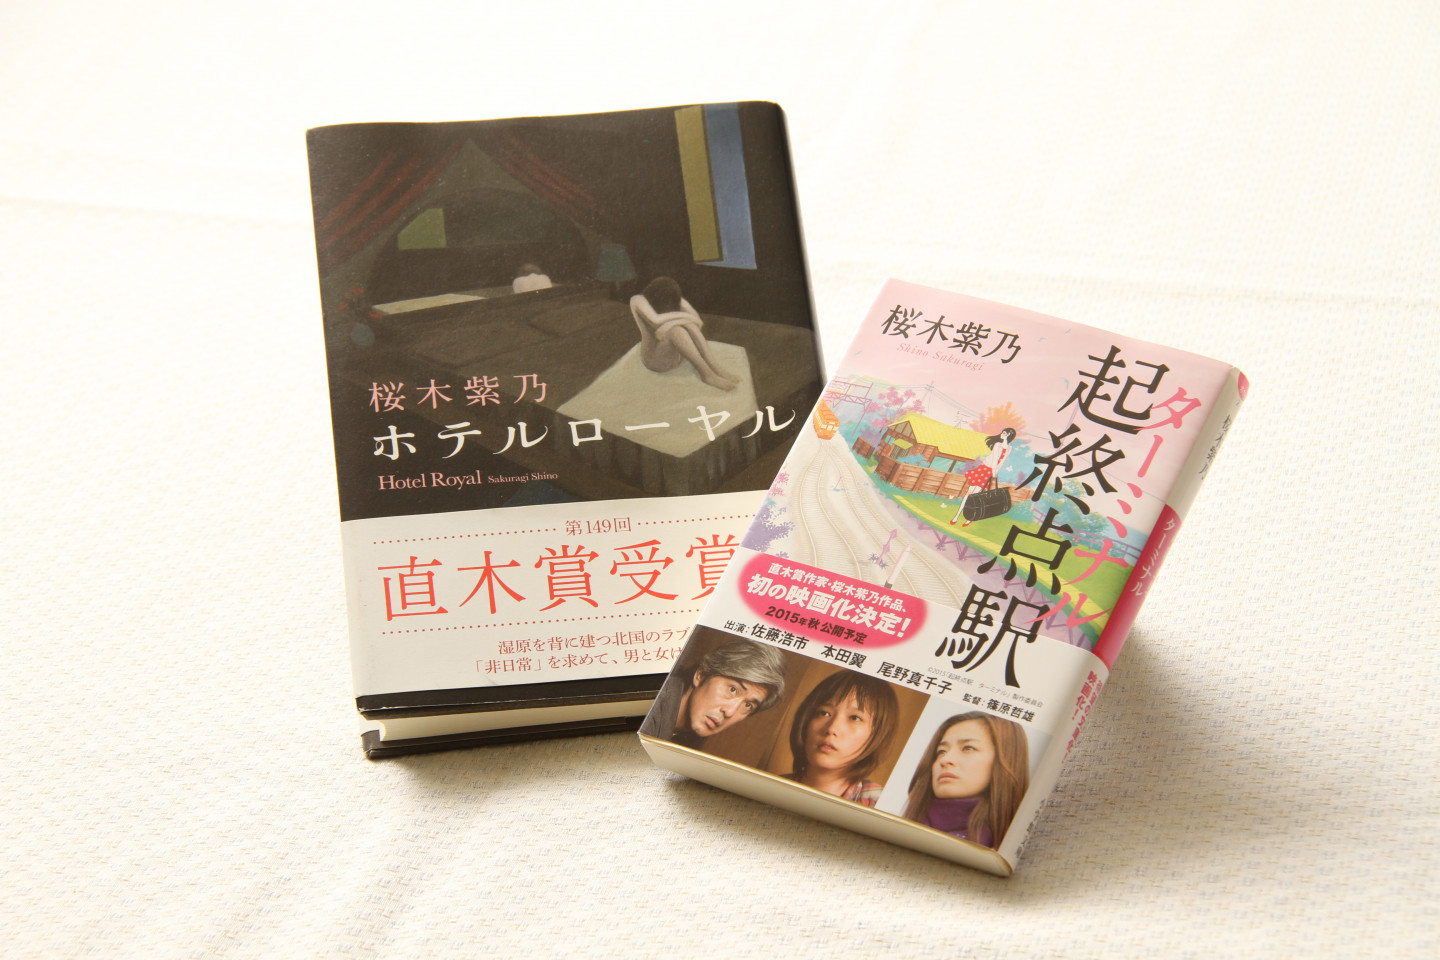 物語の舞台は釧路。釧路市出身の作家が書いた本。